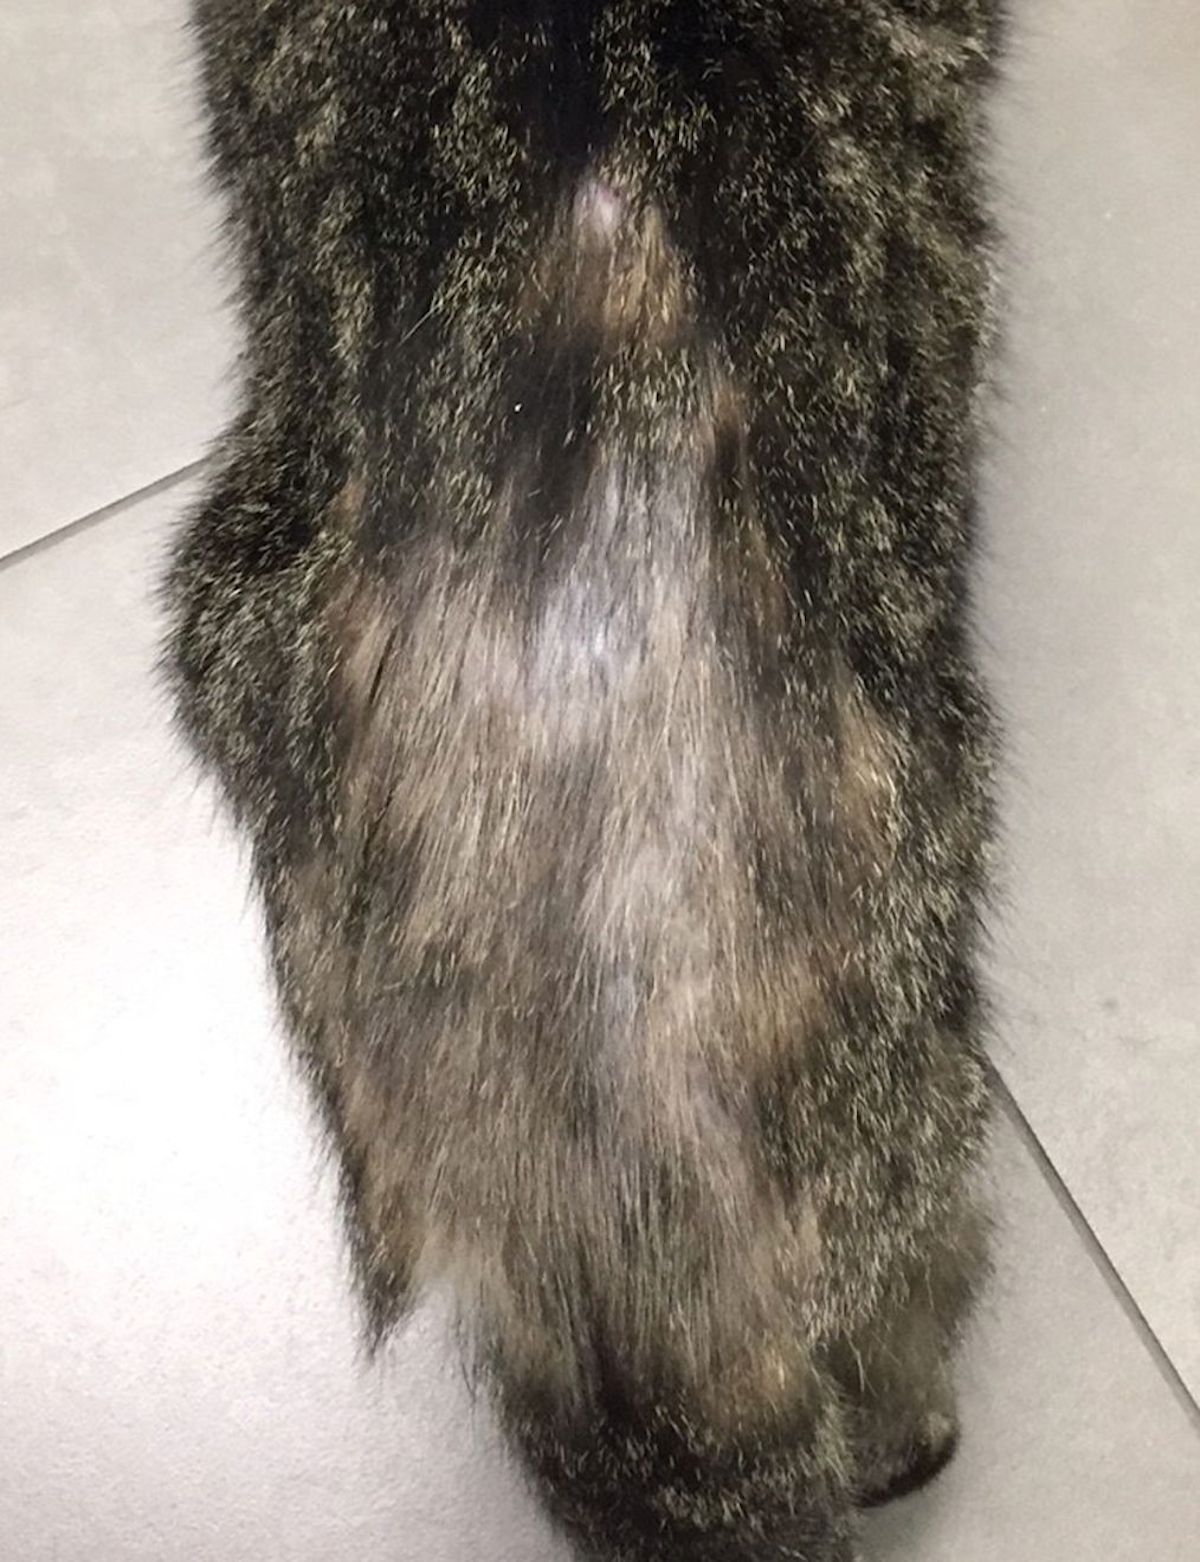 Rycina 1. Kot z „wygryzionymi” włosami, plackowatym wyłysieniem i prosówkowym zapaleniem skóry wzdłuż odcinka lędźwiowego kręgosłupa